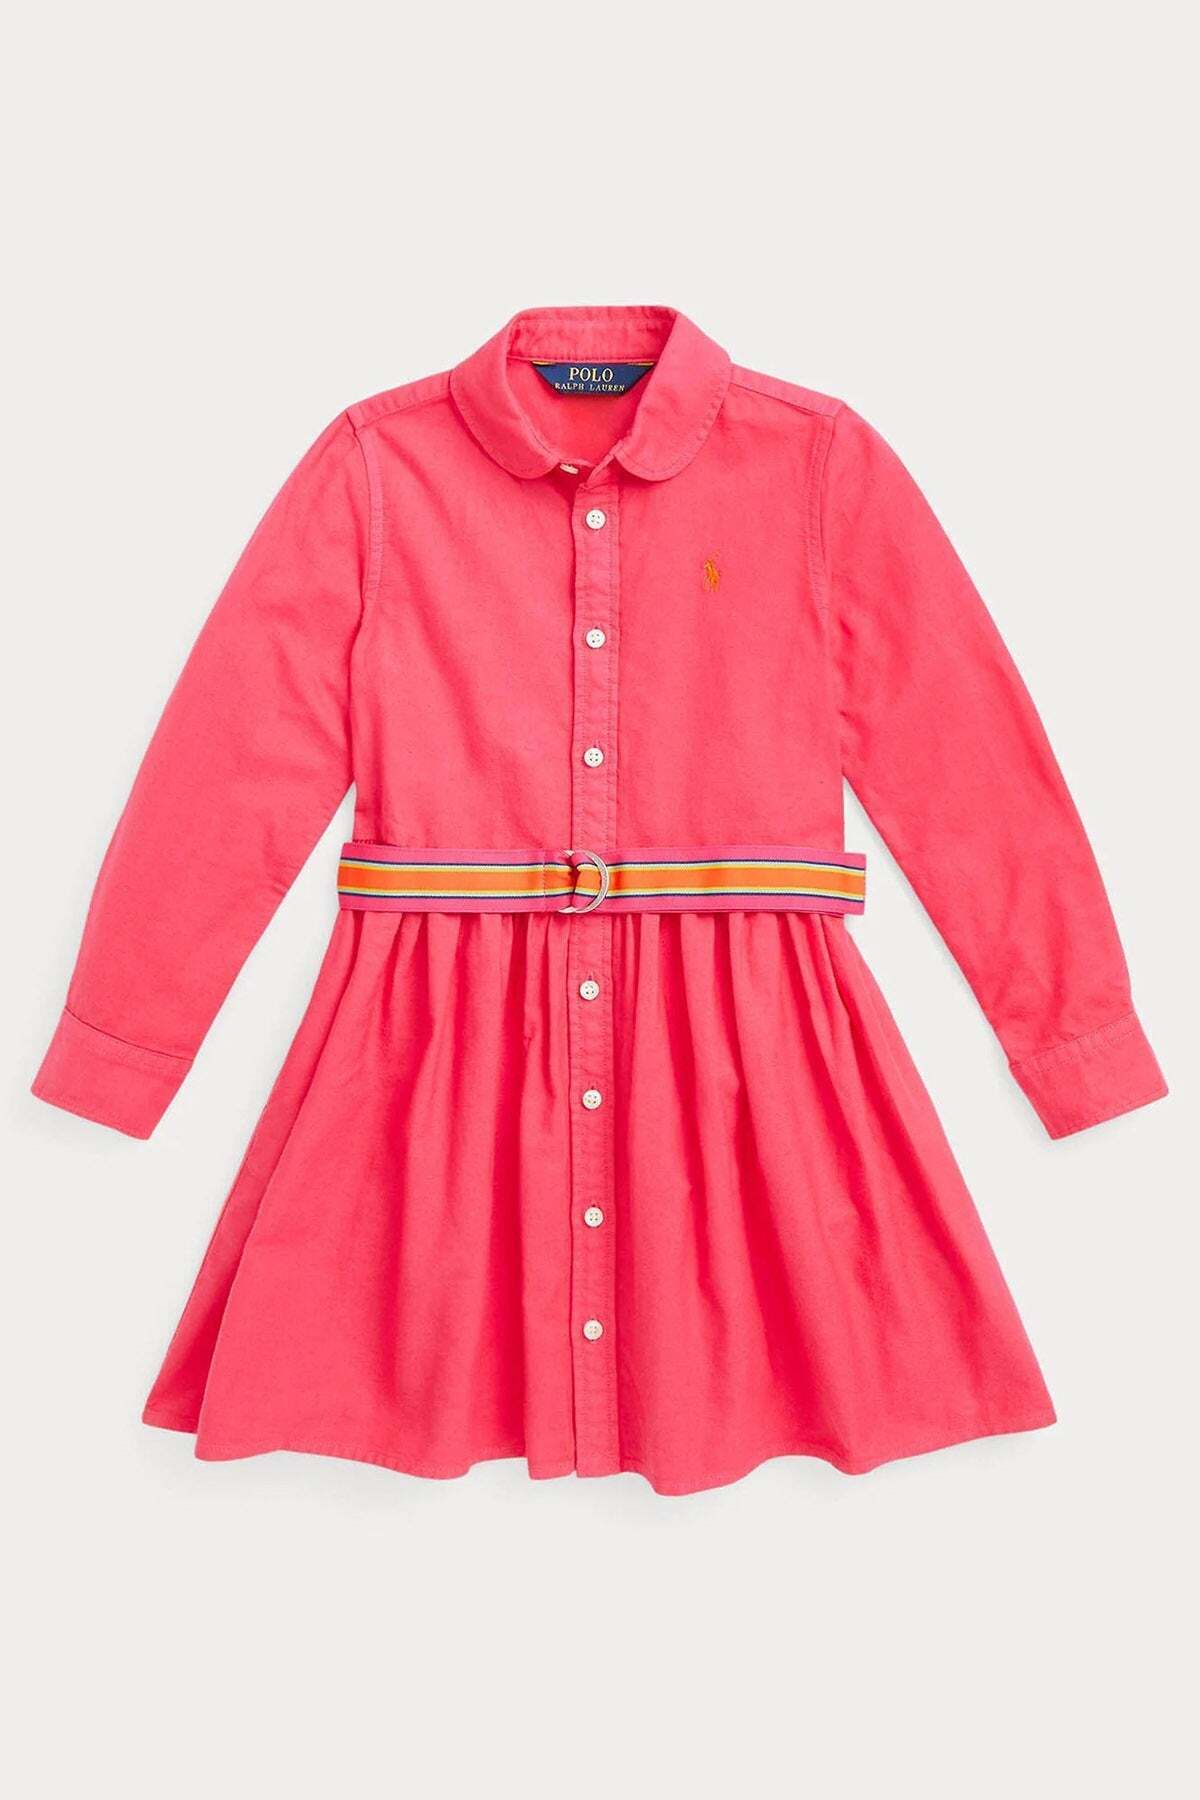 Ralph Lauren 5-6 Yaş Kız Çocuk Gömlek Elbise 6y / Pembe